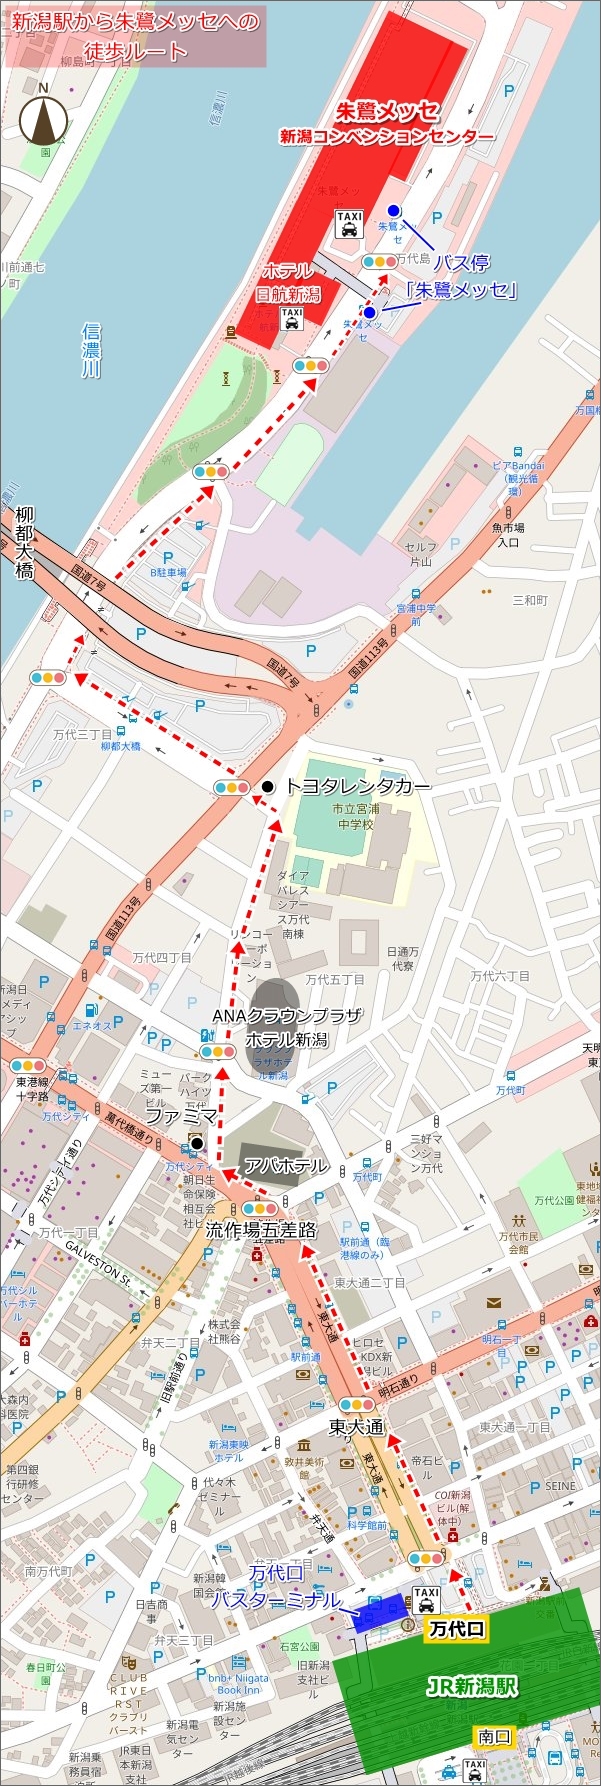 新潟駅から朱鷺メッセへの徒歩ルート(地図)02